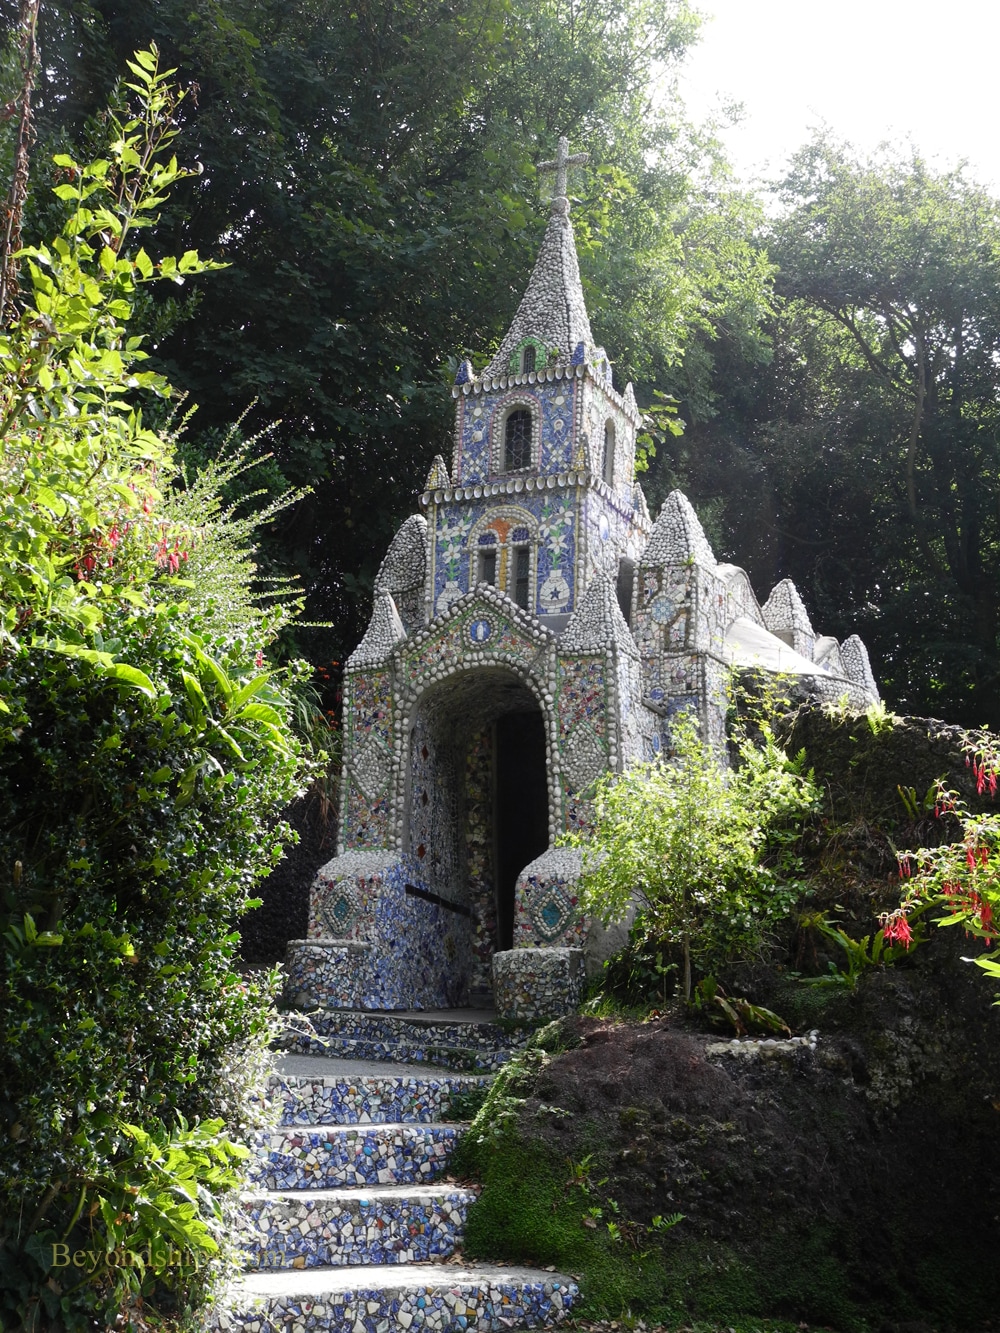 The Little Chapel, Guernsey